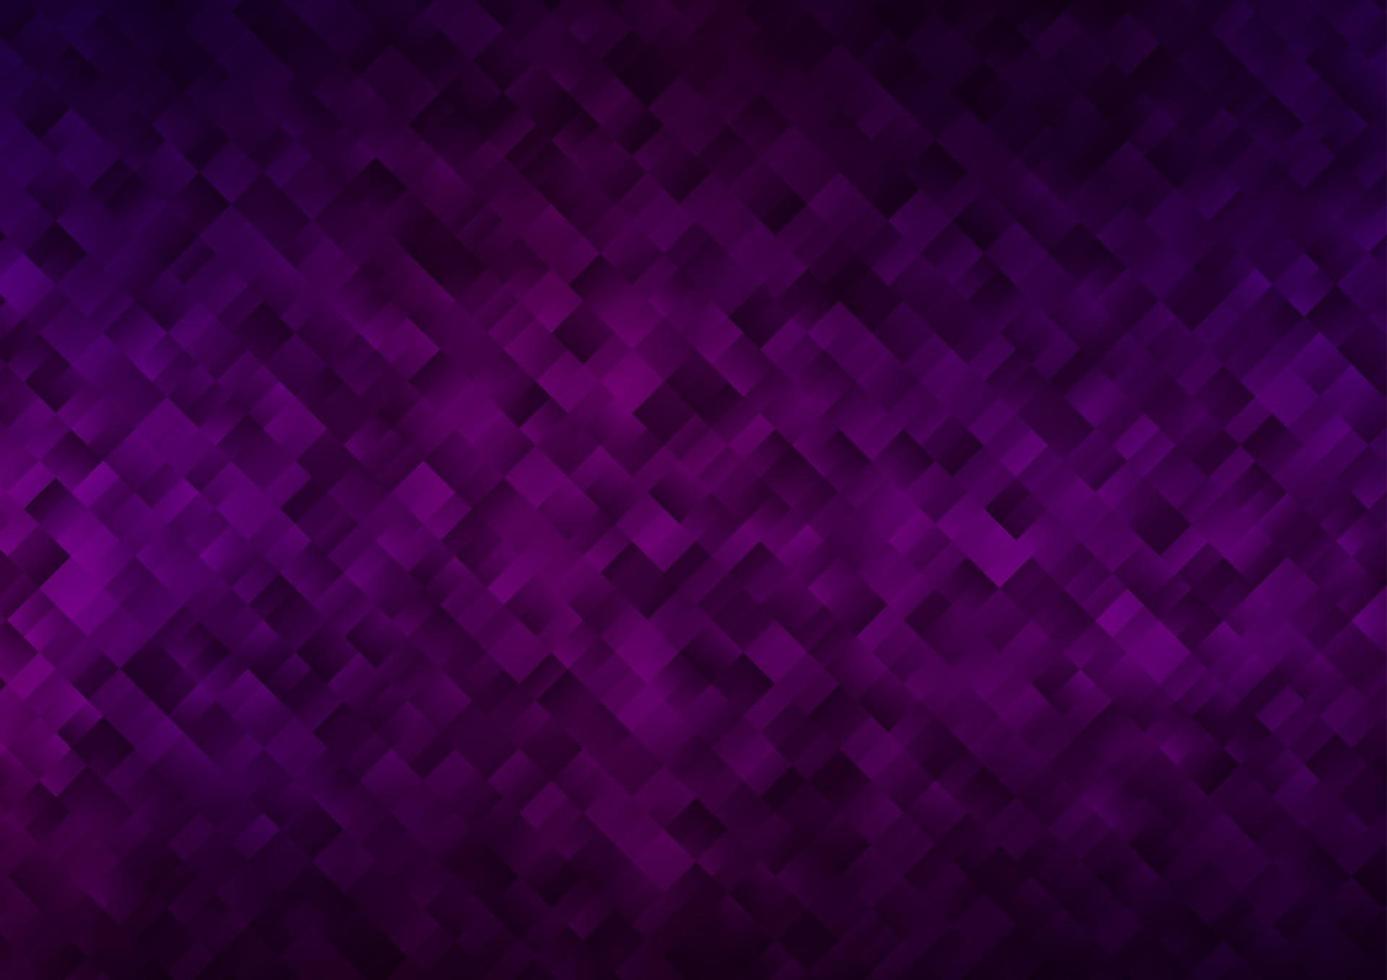 sfondo vettoriale viola scuro con rettangoli.